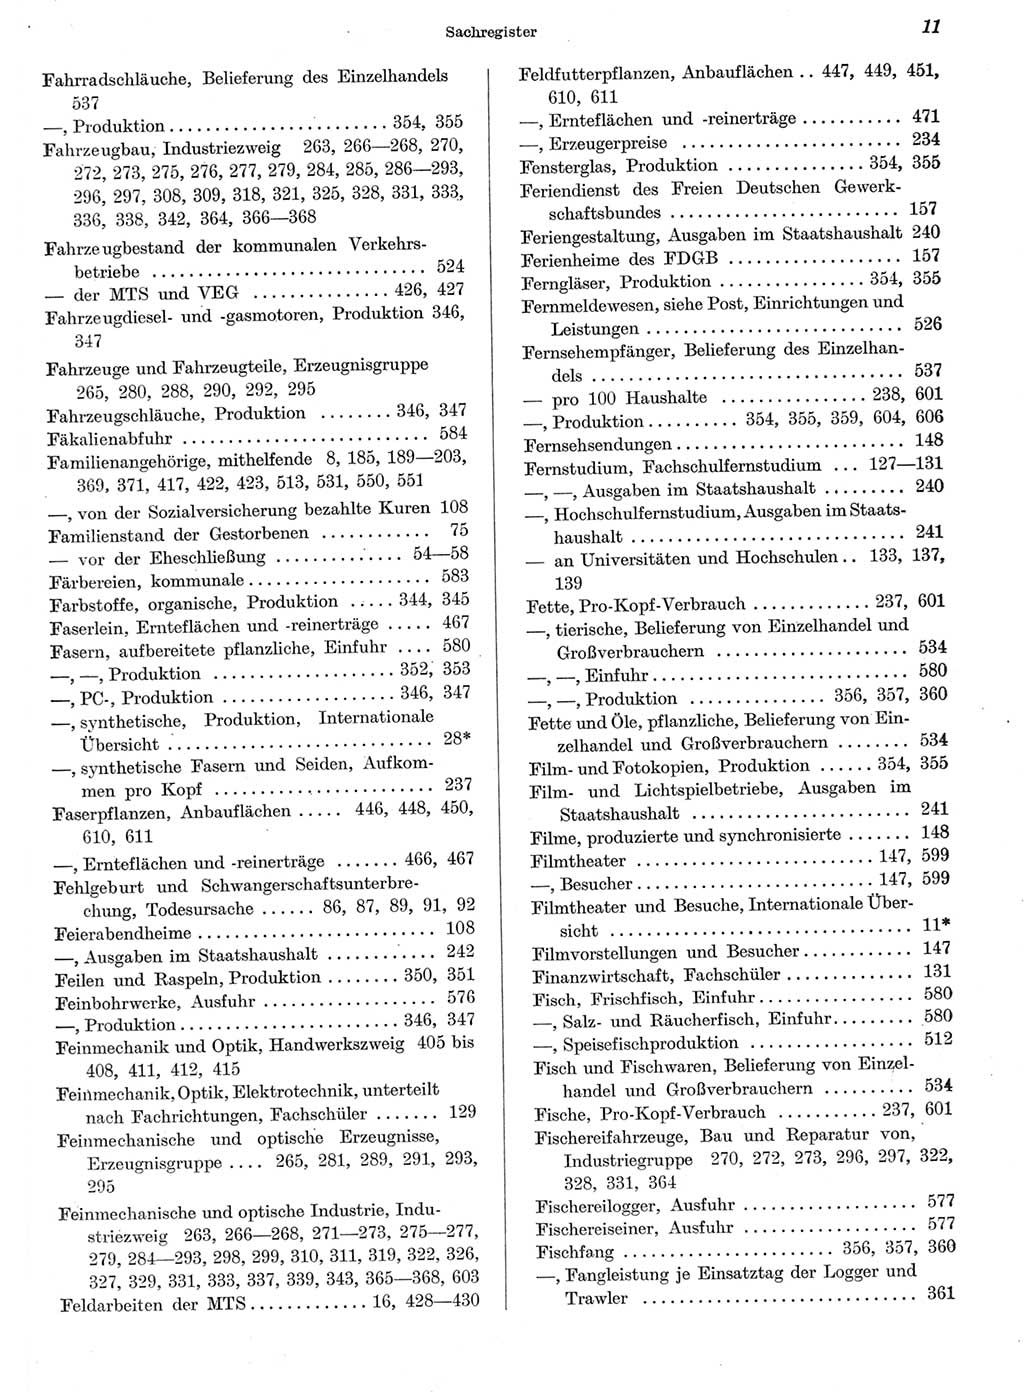 Statistisches Jahrbuch der Deutschen Demokratischen Republik (DDR) 1959, Seite 11 (Stat. Jb. DDR 1959, S. 11)